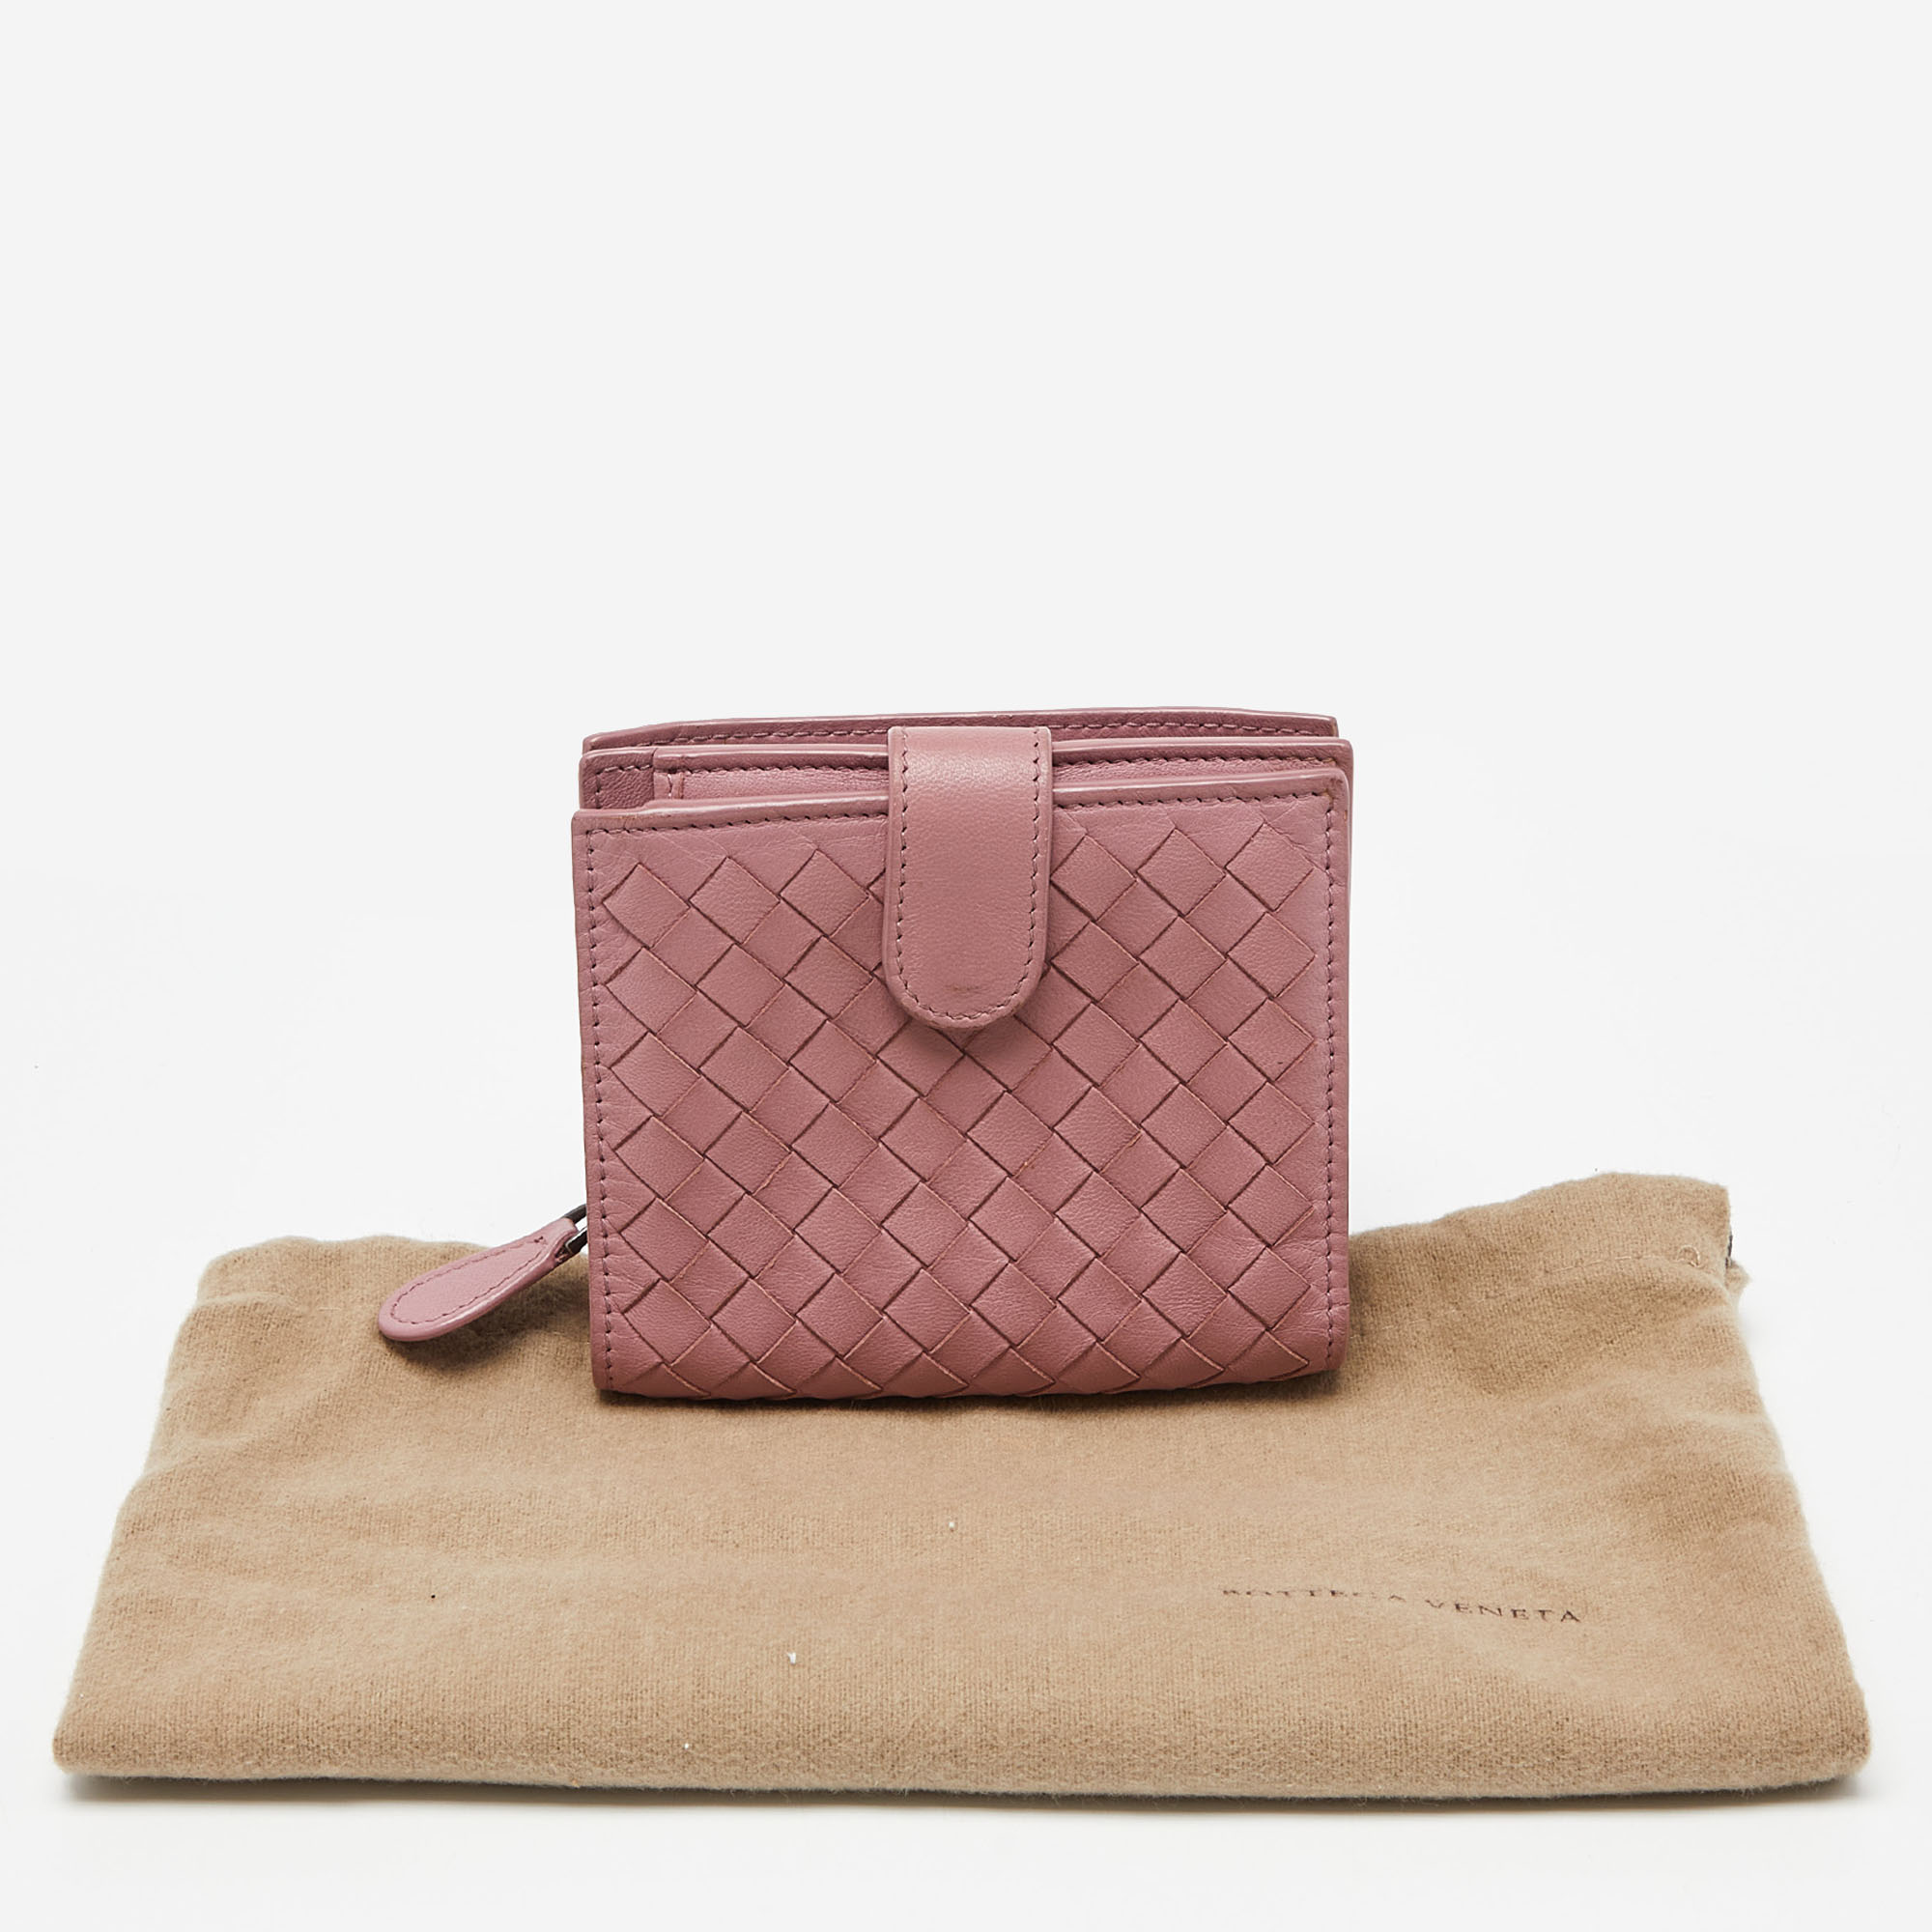 Bottega Veneta Pink Intrecciato Leather French Flap Wallet